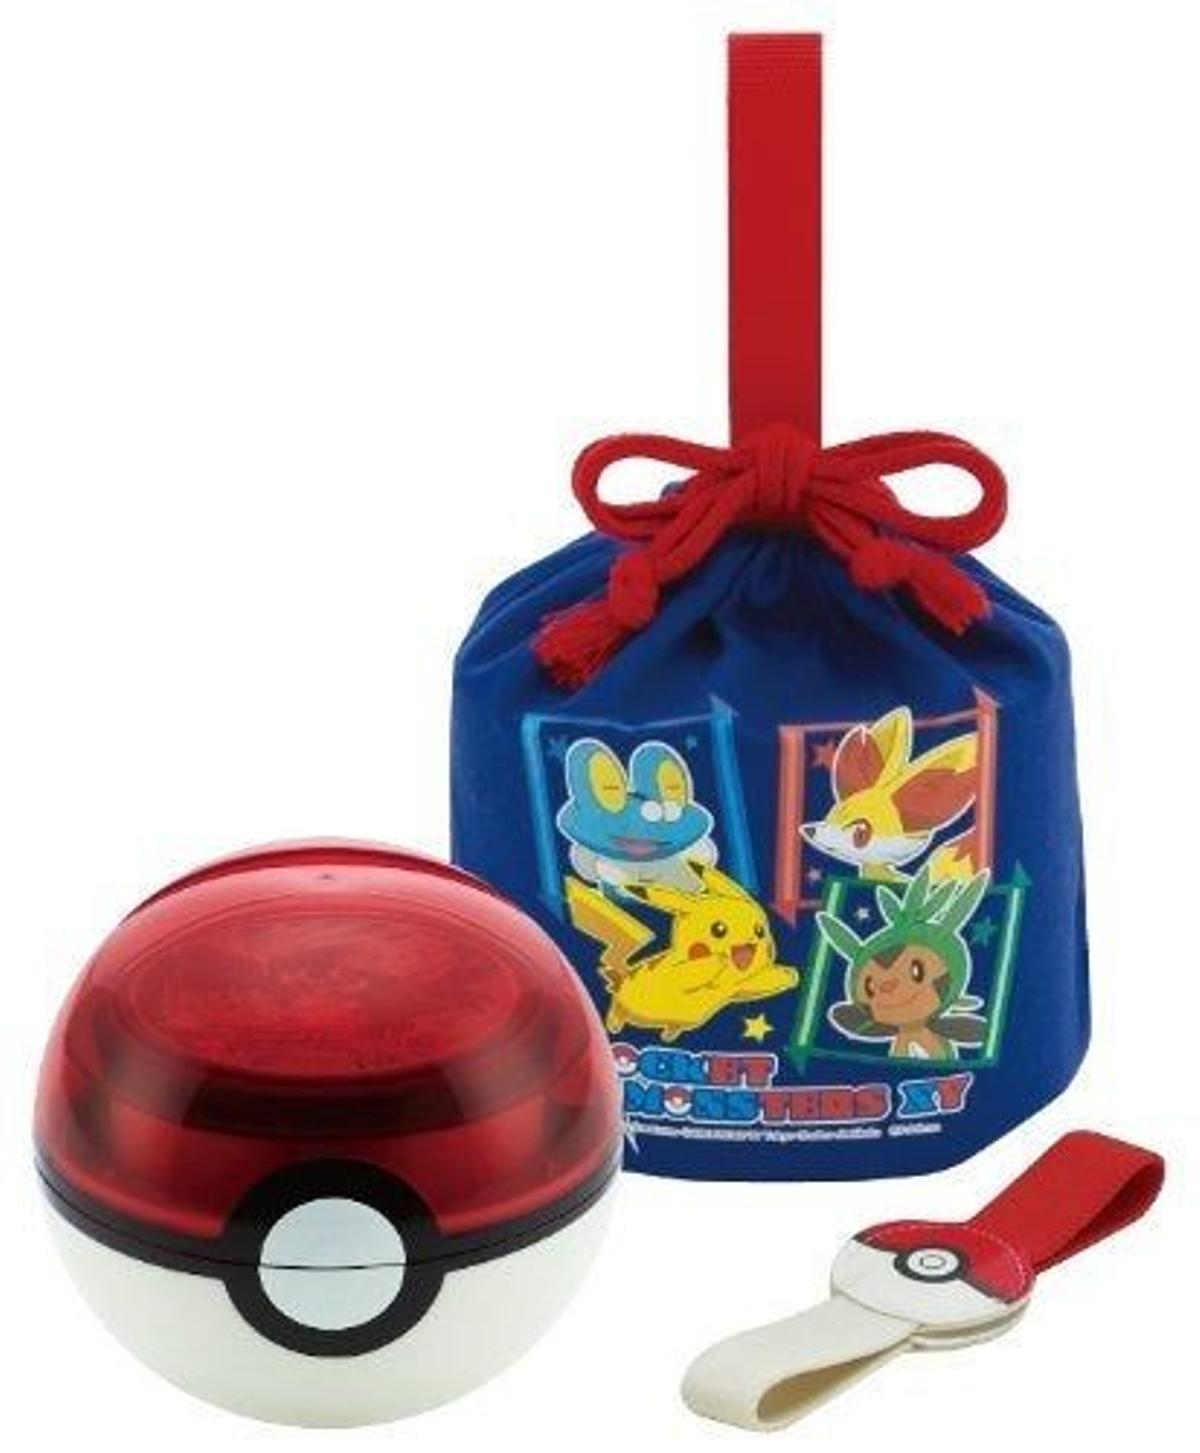 Bolsa para la comida de Pokemon (Precio: 26,96 euros)